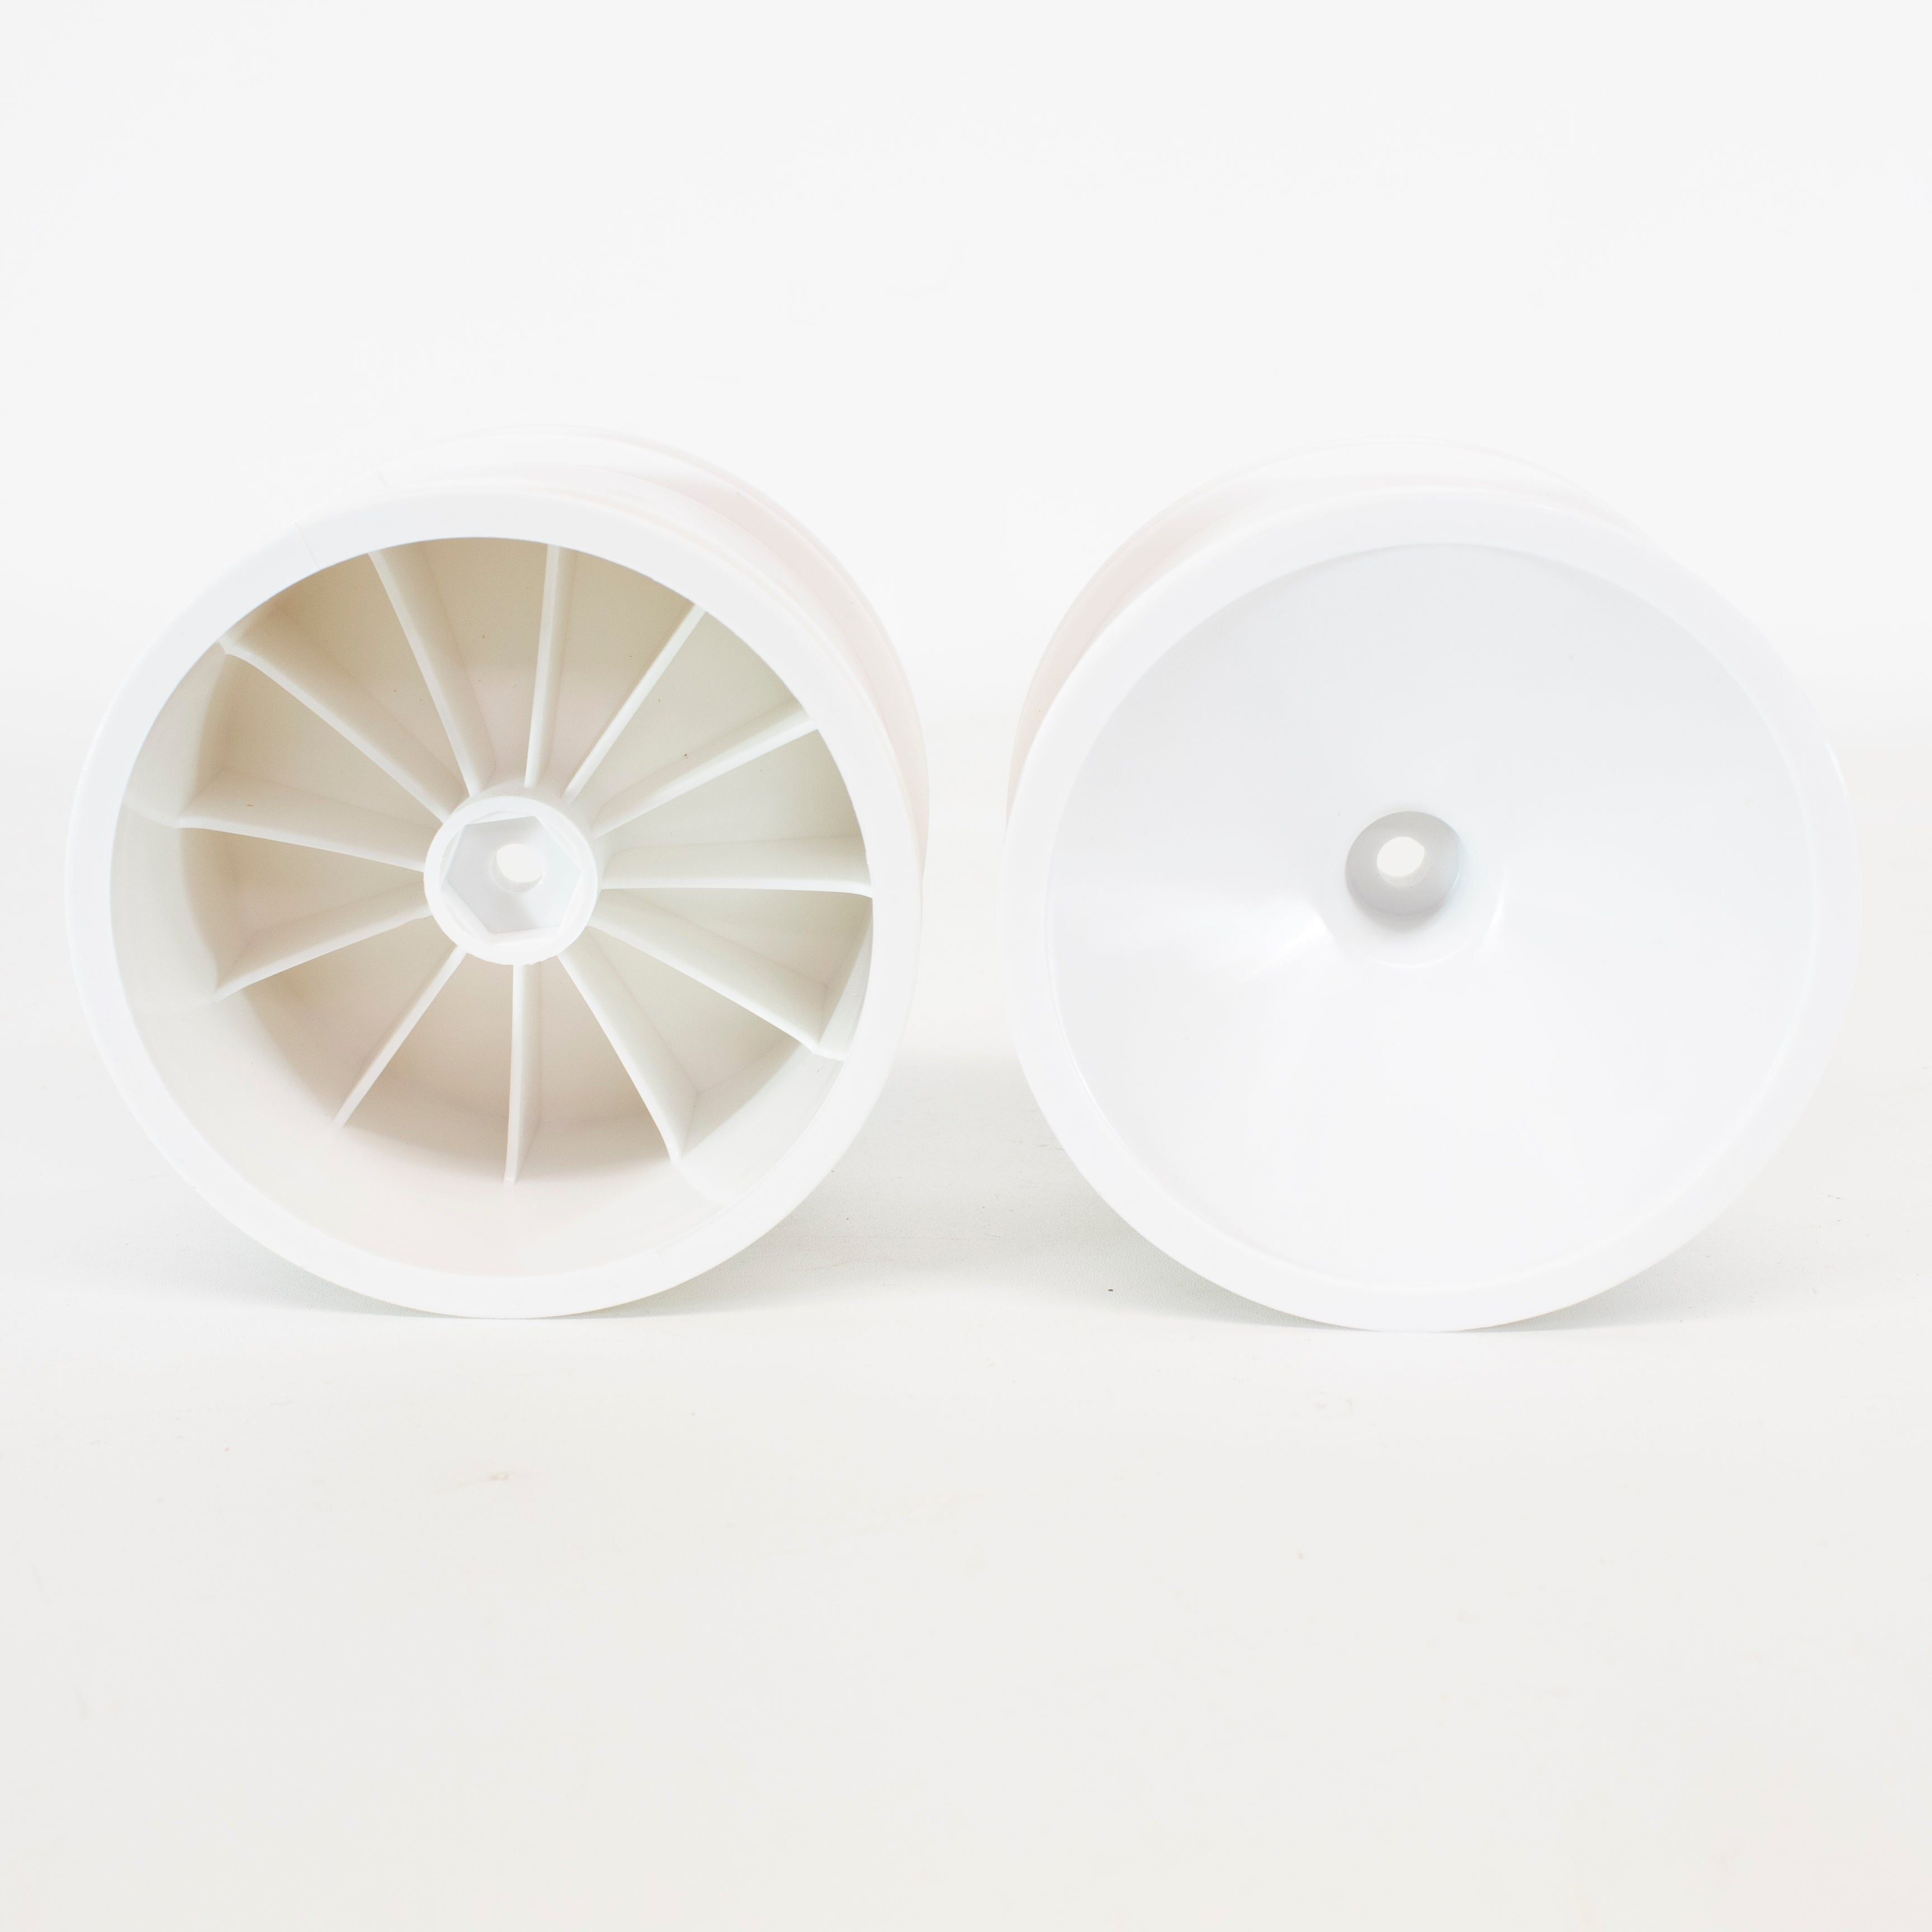 IMEX 2.8 White Dish Rims (1 pair) Rear